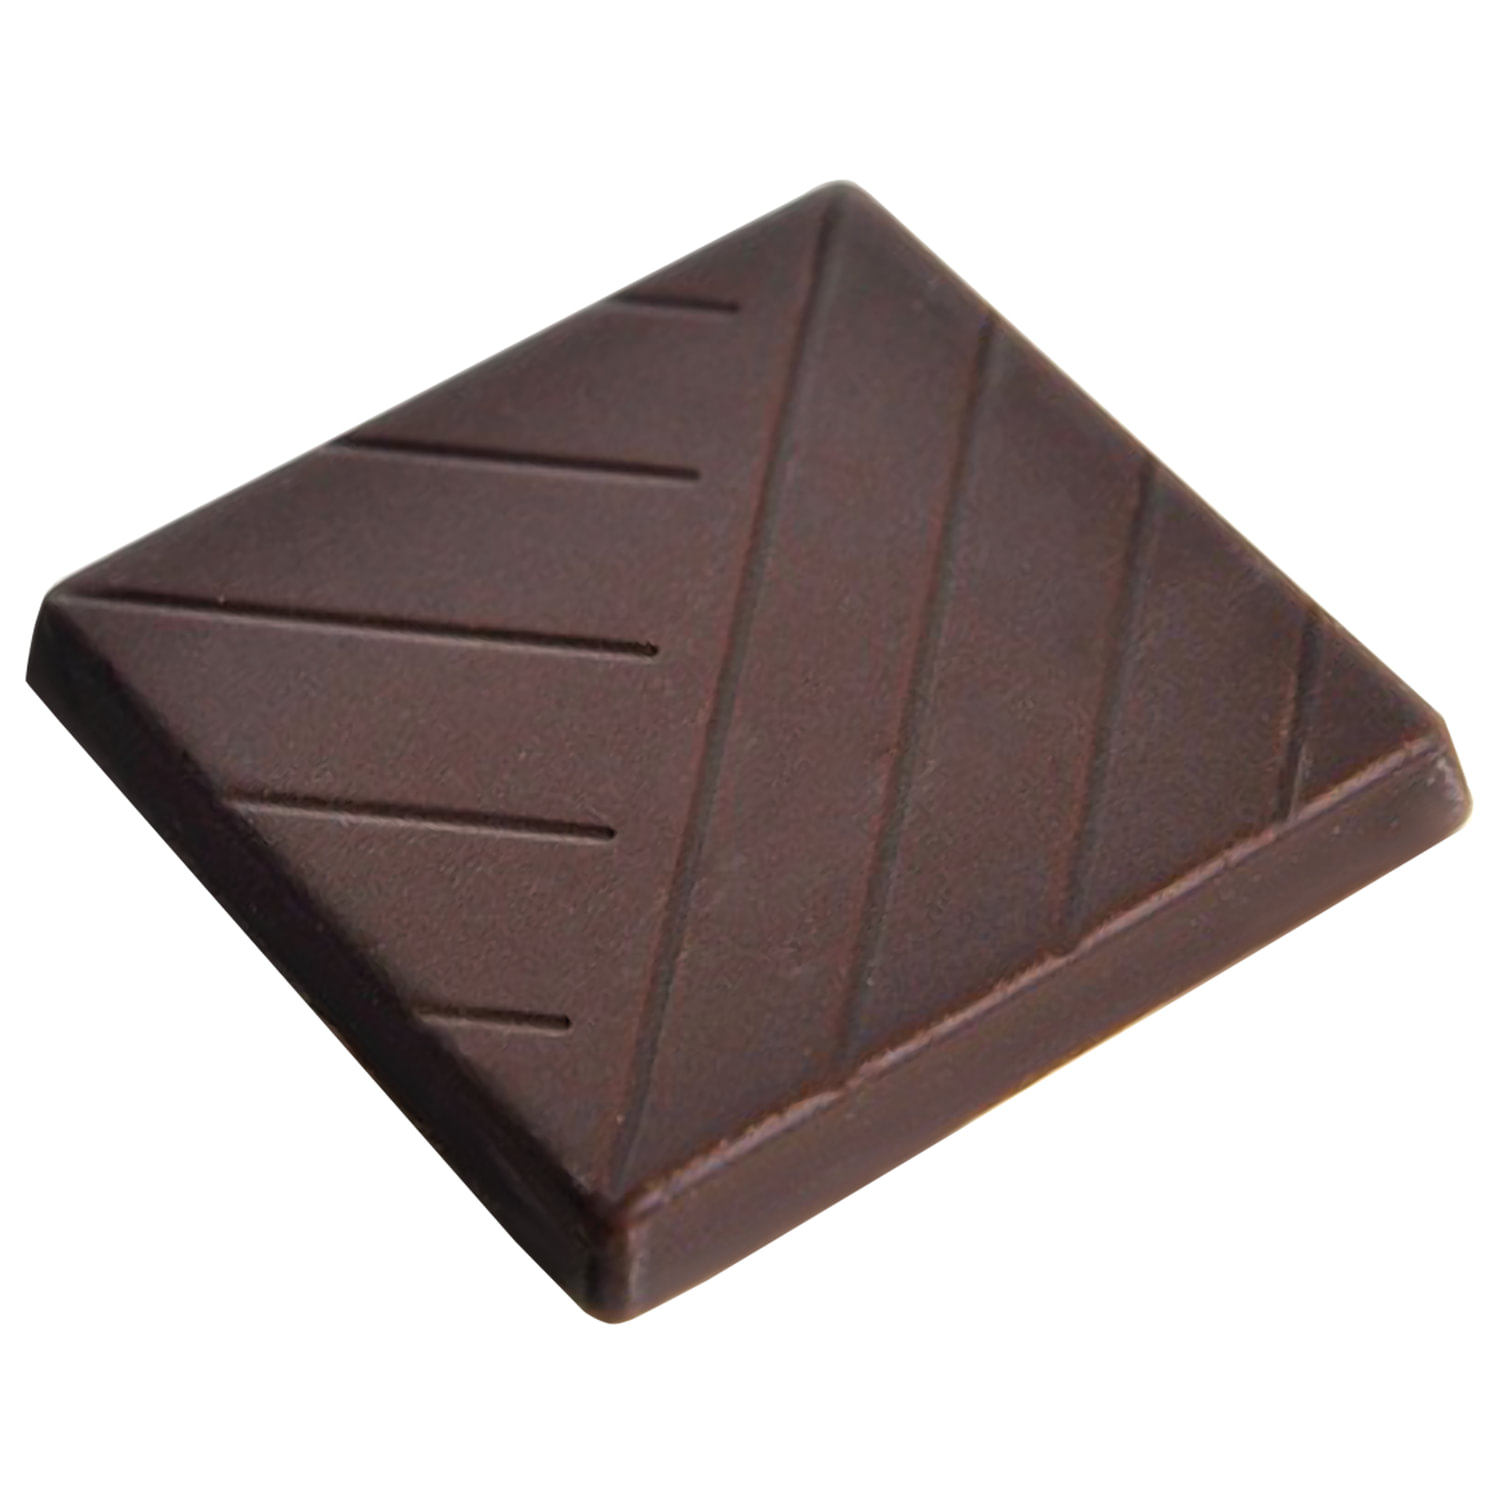 1 5 плитки шоколада. Шоколад порционный Горький Rioba, 72% какао, 800 г. Горький шоколад монетный двор. Шоколад монетный двор Горький 72 5г/96 шт. Шоколад Rioba порционный.